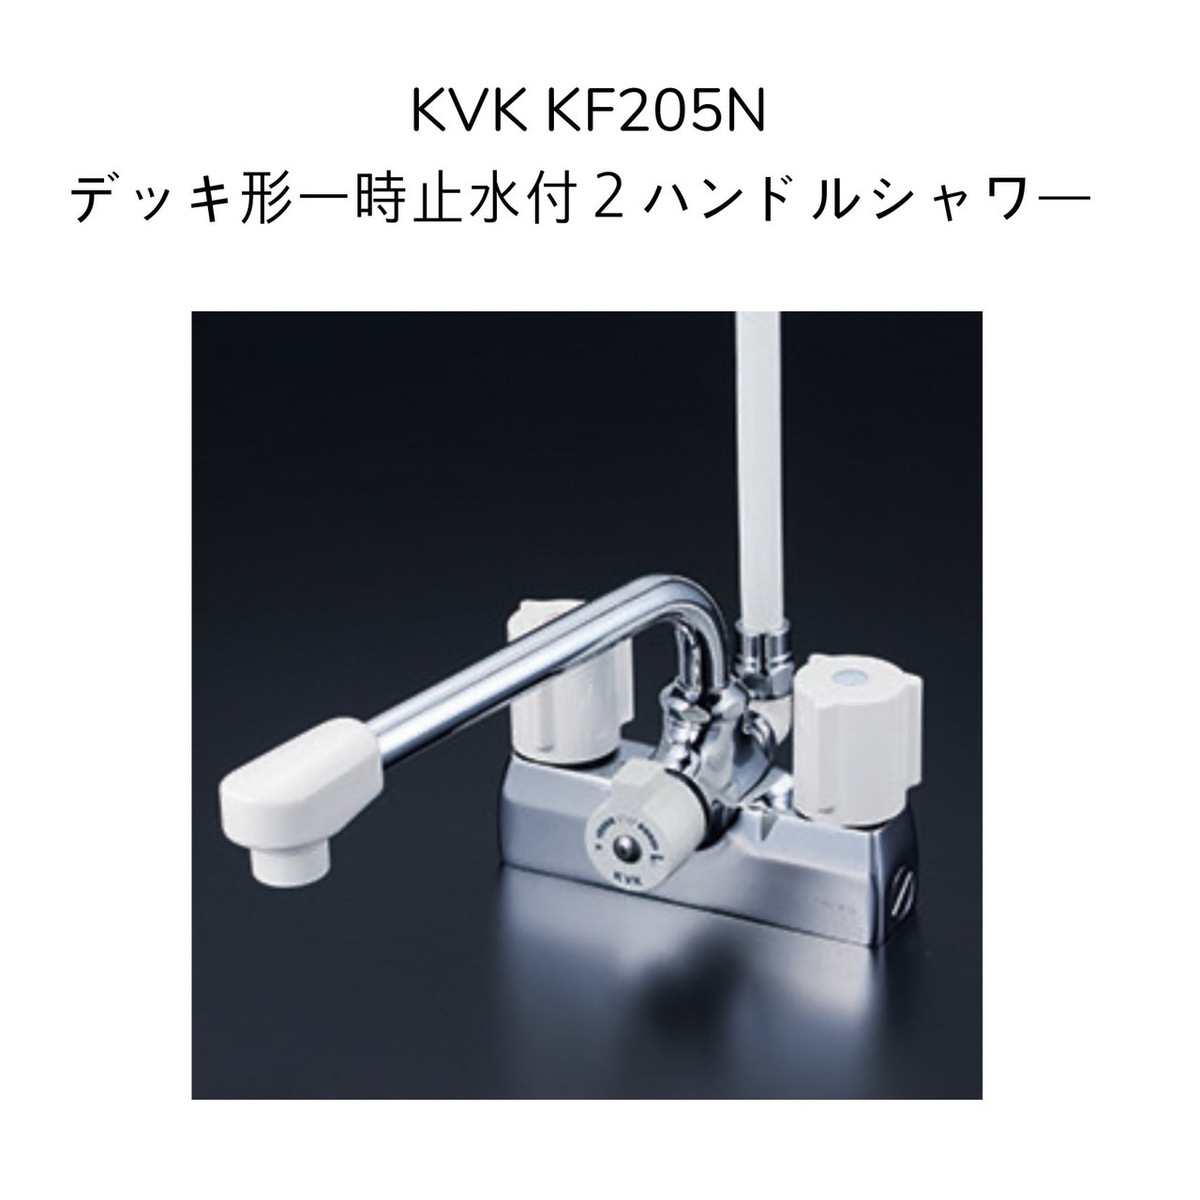 セール 登場から人気沸騰 KVK KF205N デッキ型一時止水付2ハンドルシャワー 220mmパイプ付 取付ピッチ100mm シャワーホース白1.6m  白ハンガー 混合水栓 湯水